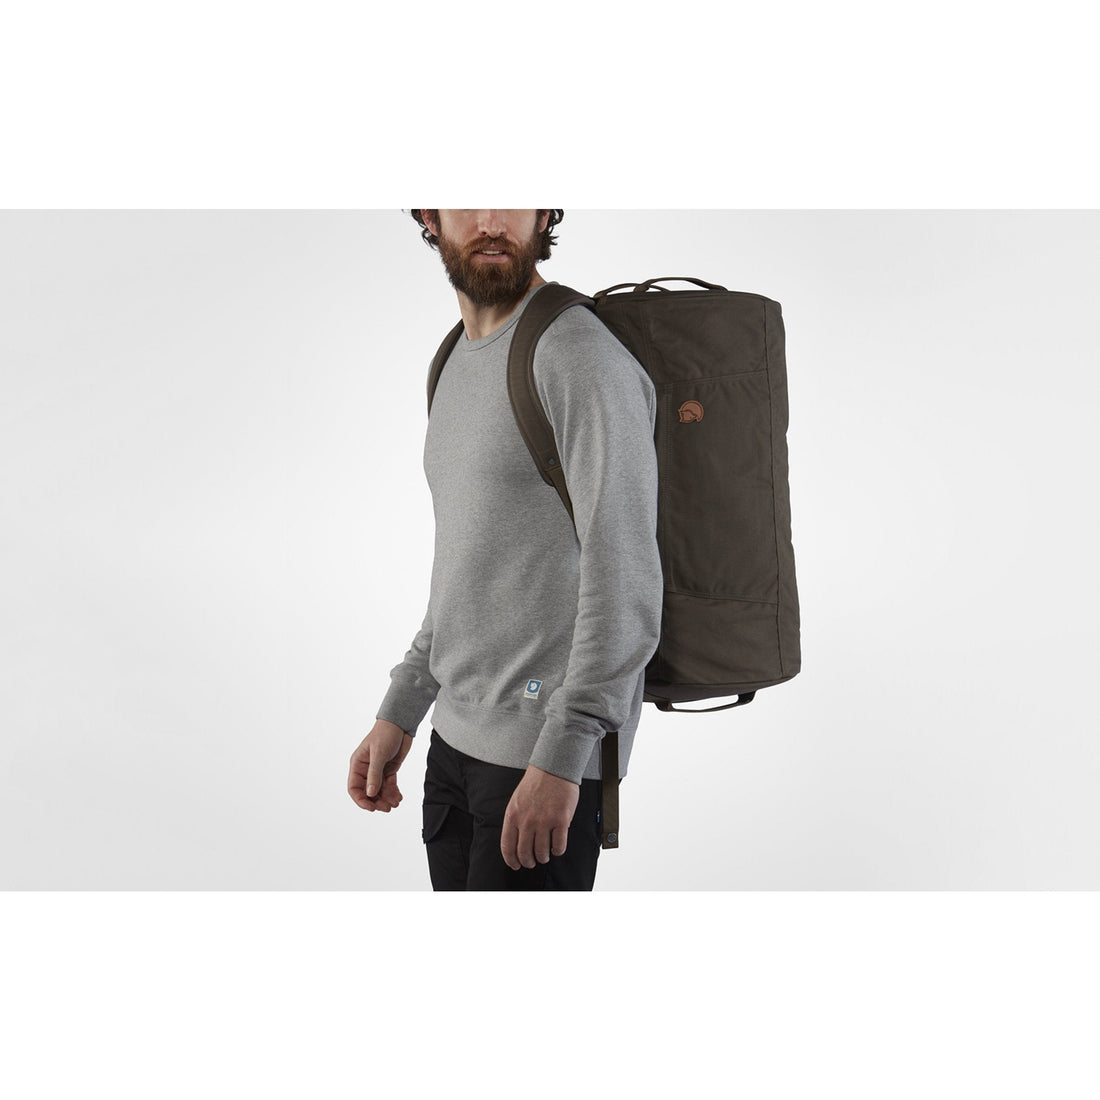 Portiek Ruïneren toewijzing Splitpack Large Backpack - Shop Online | Fjallraven Australia